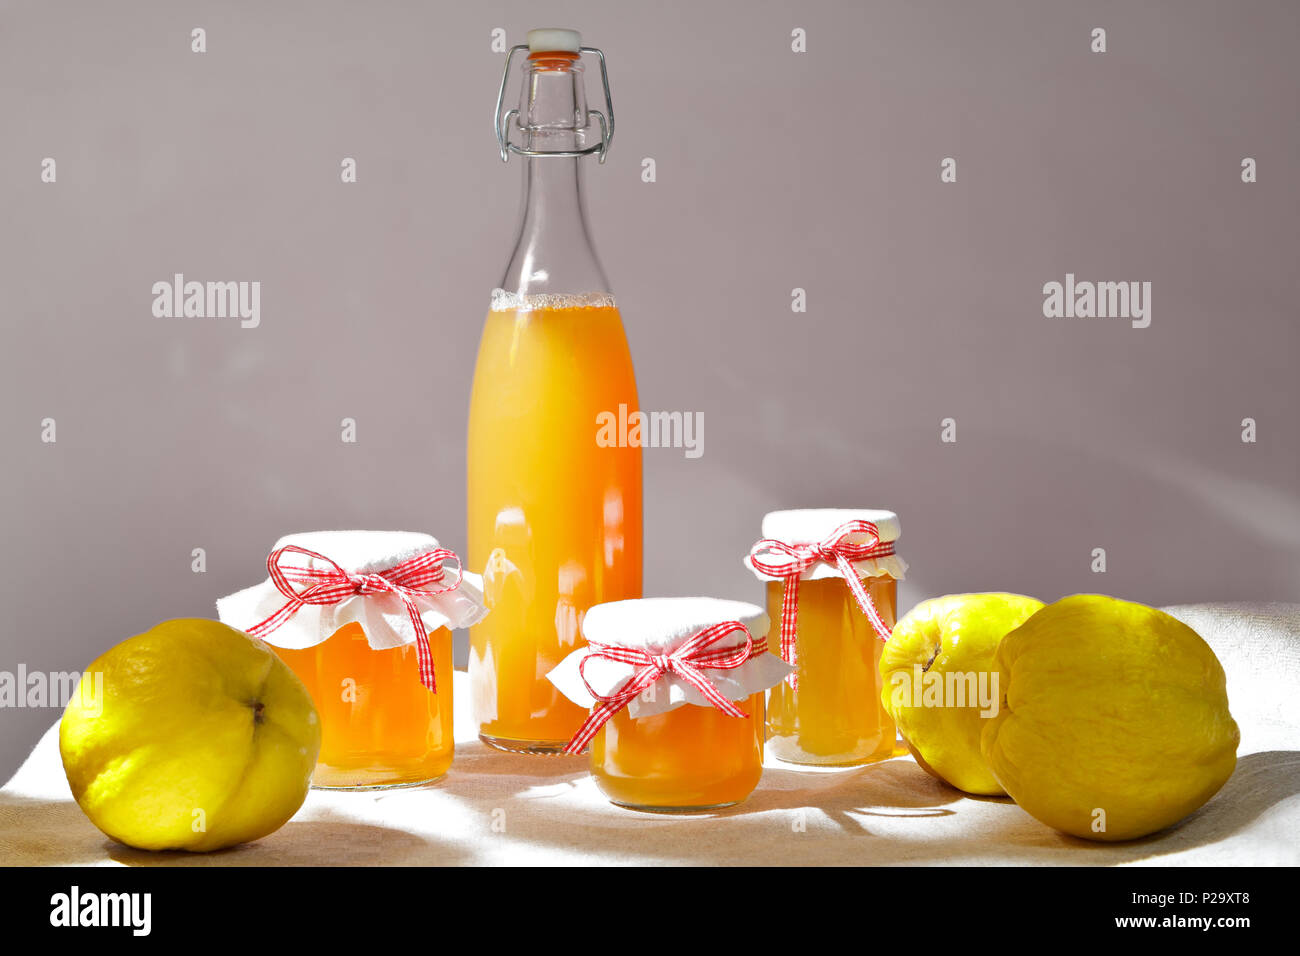 Hausgemachte Quitten Gelee und Saft in Flaschen und Gläsern mit Quitten auf Leinen Tischdecke im hellen Sonnenschein vor neutralem Hintergrund. Stockfoto